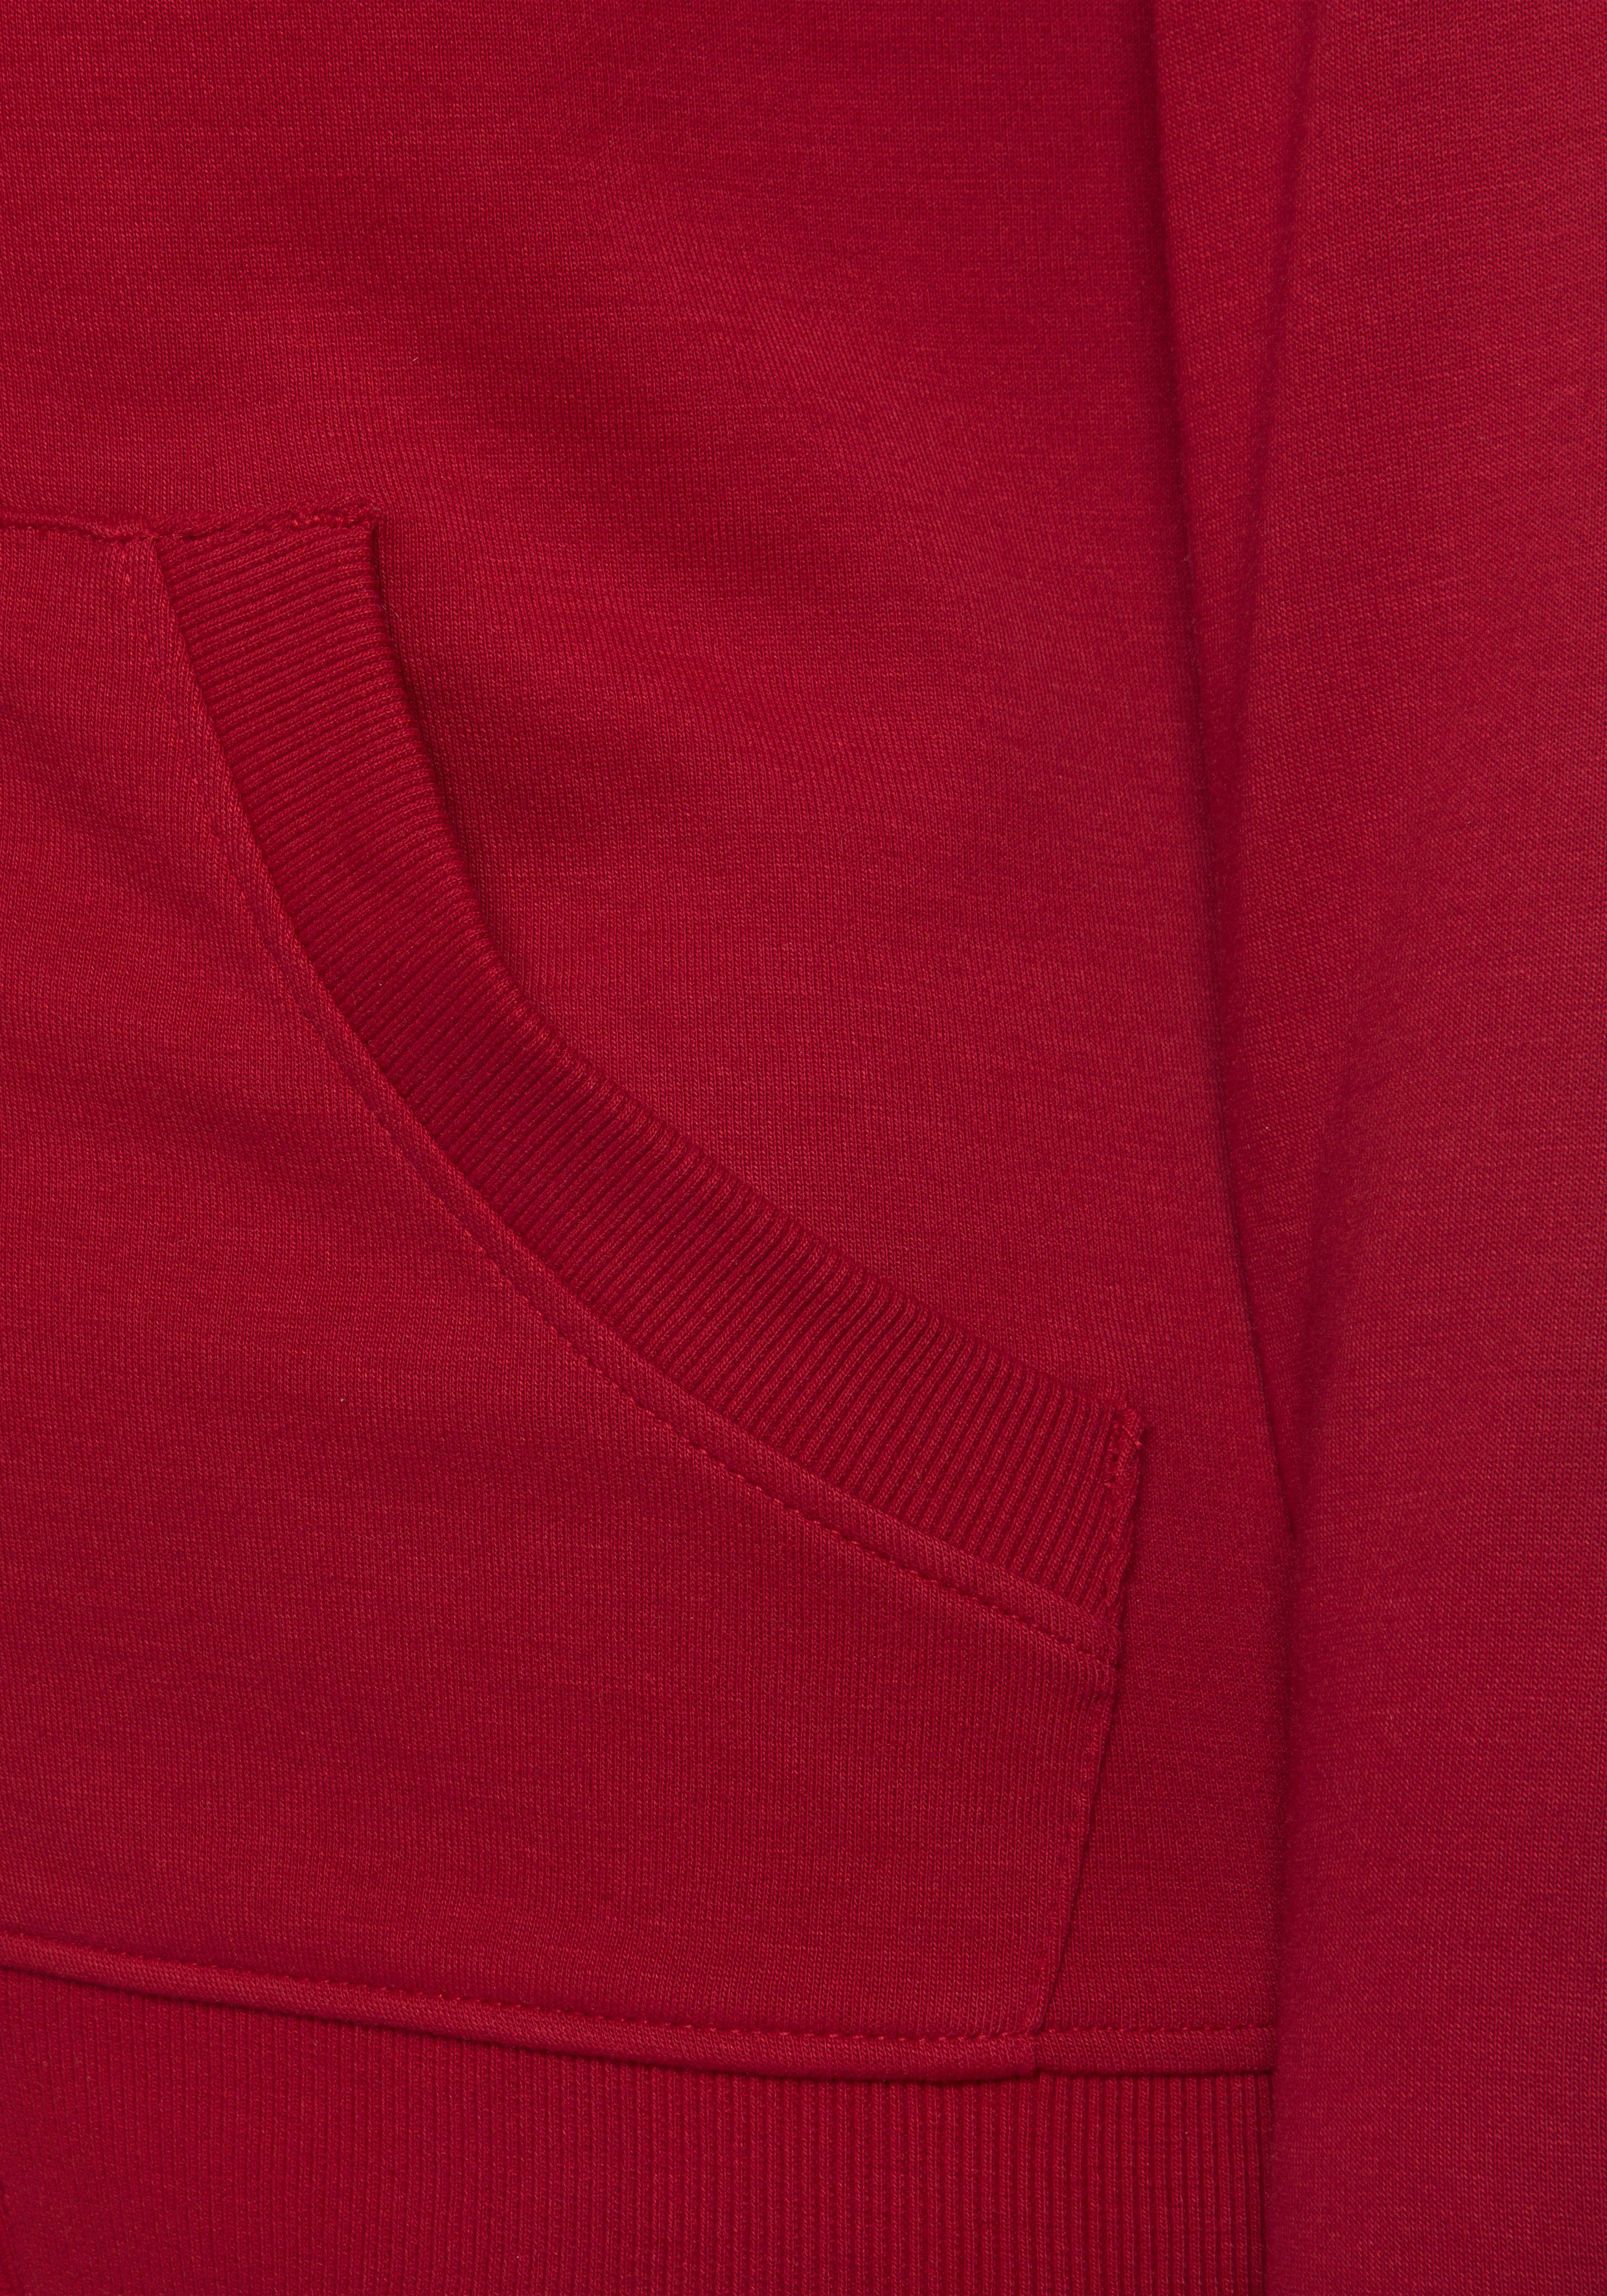 seitlichen und Loungeanzug rot H.I.S mit Taschen, Kapuze Kapuzensweatjacke